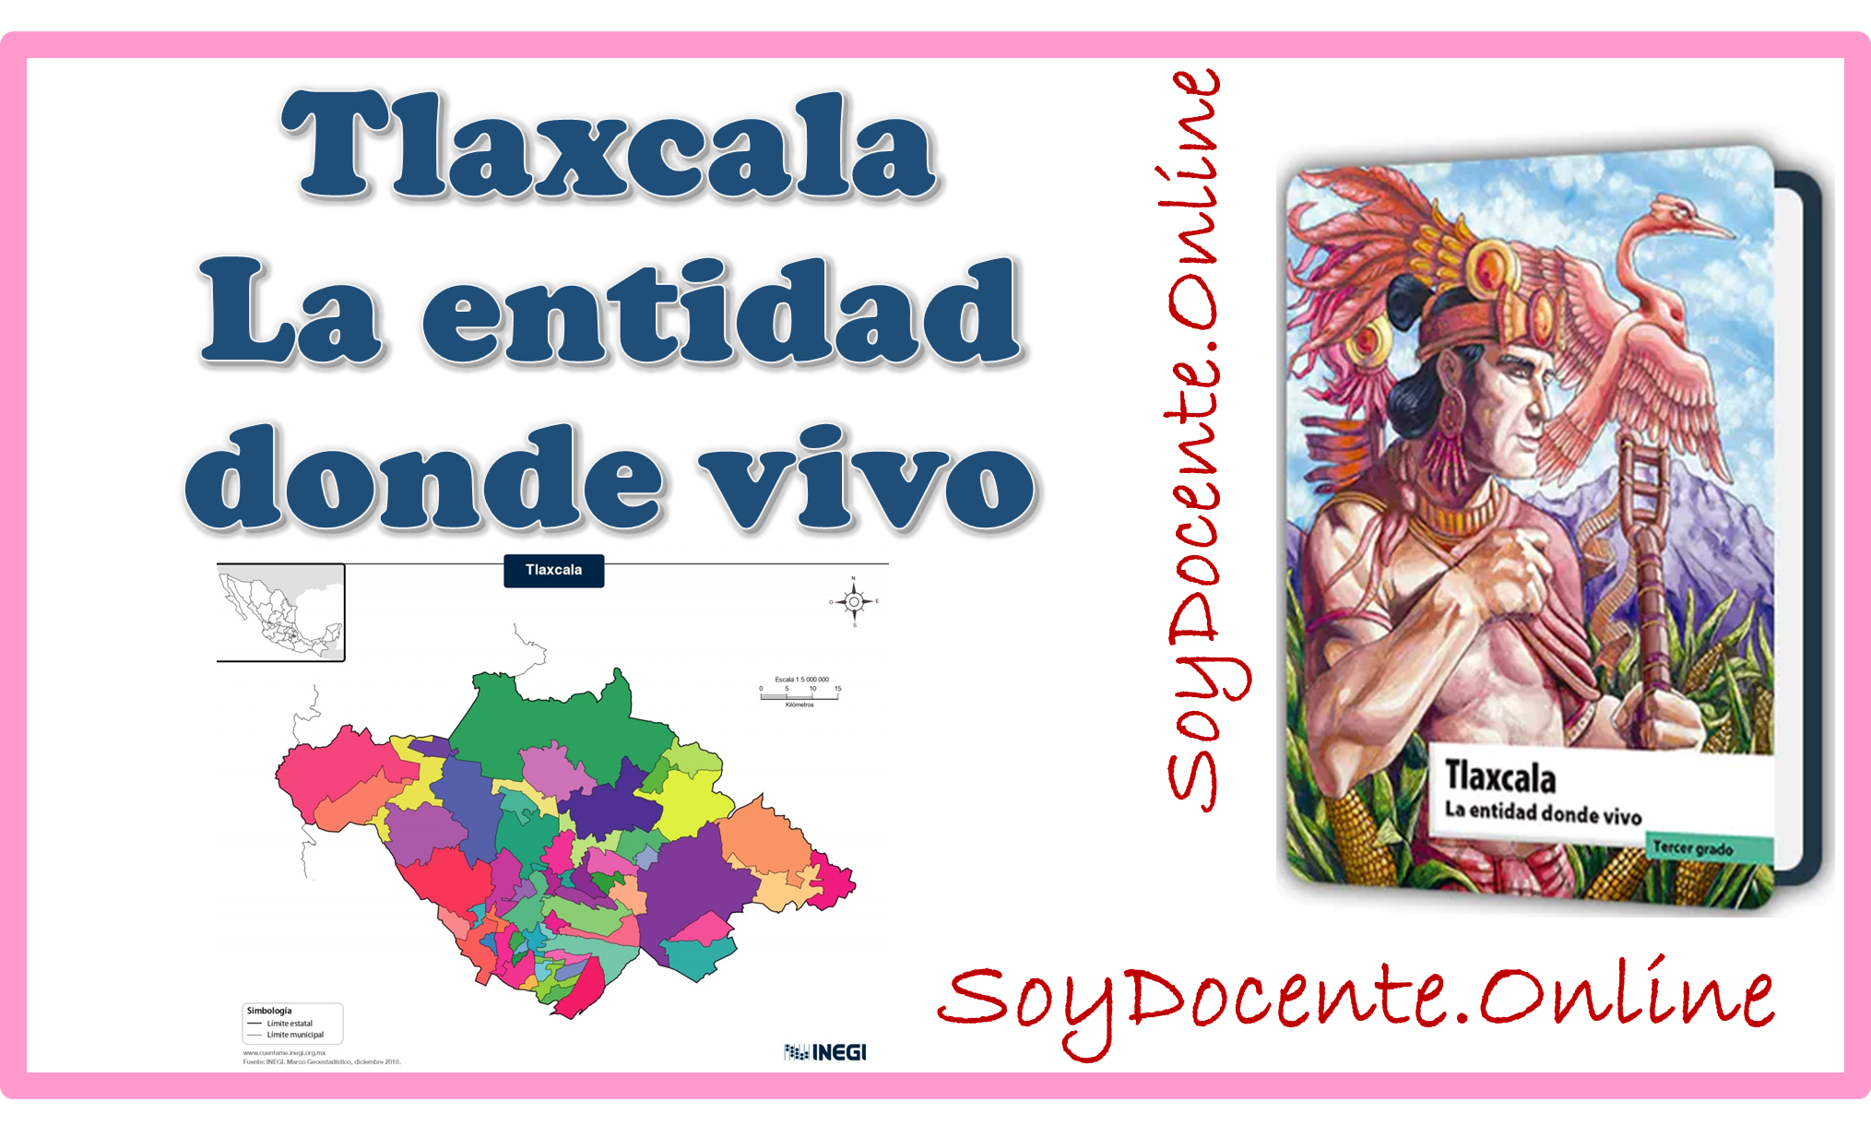 Libro de Tlaxcala La entidad donde vivo tercer grado de Primaria, por la SEP, distribuido por CONALITEG, descarga en formato PDF gratis.